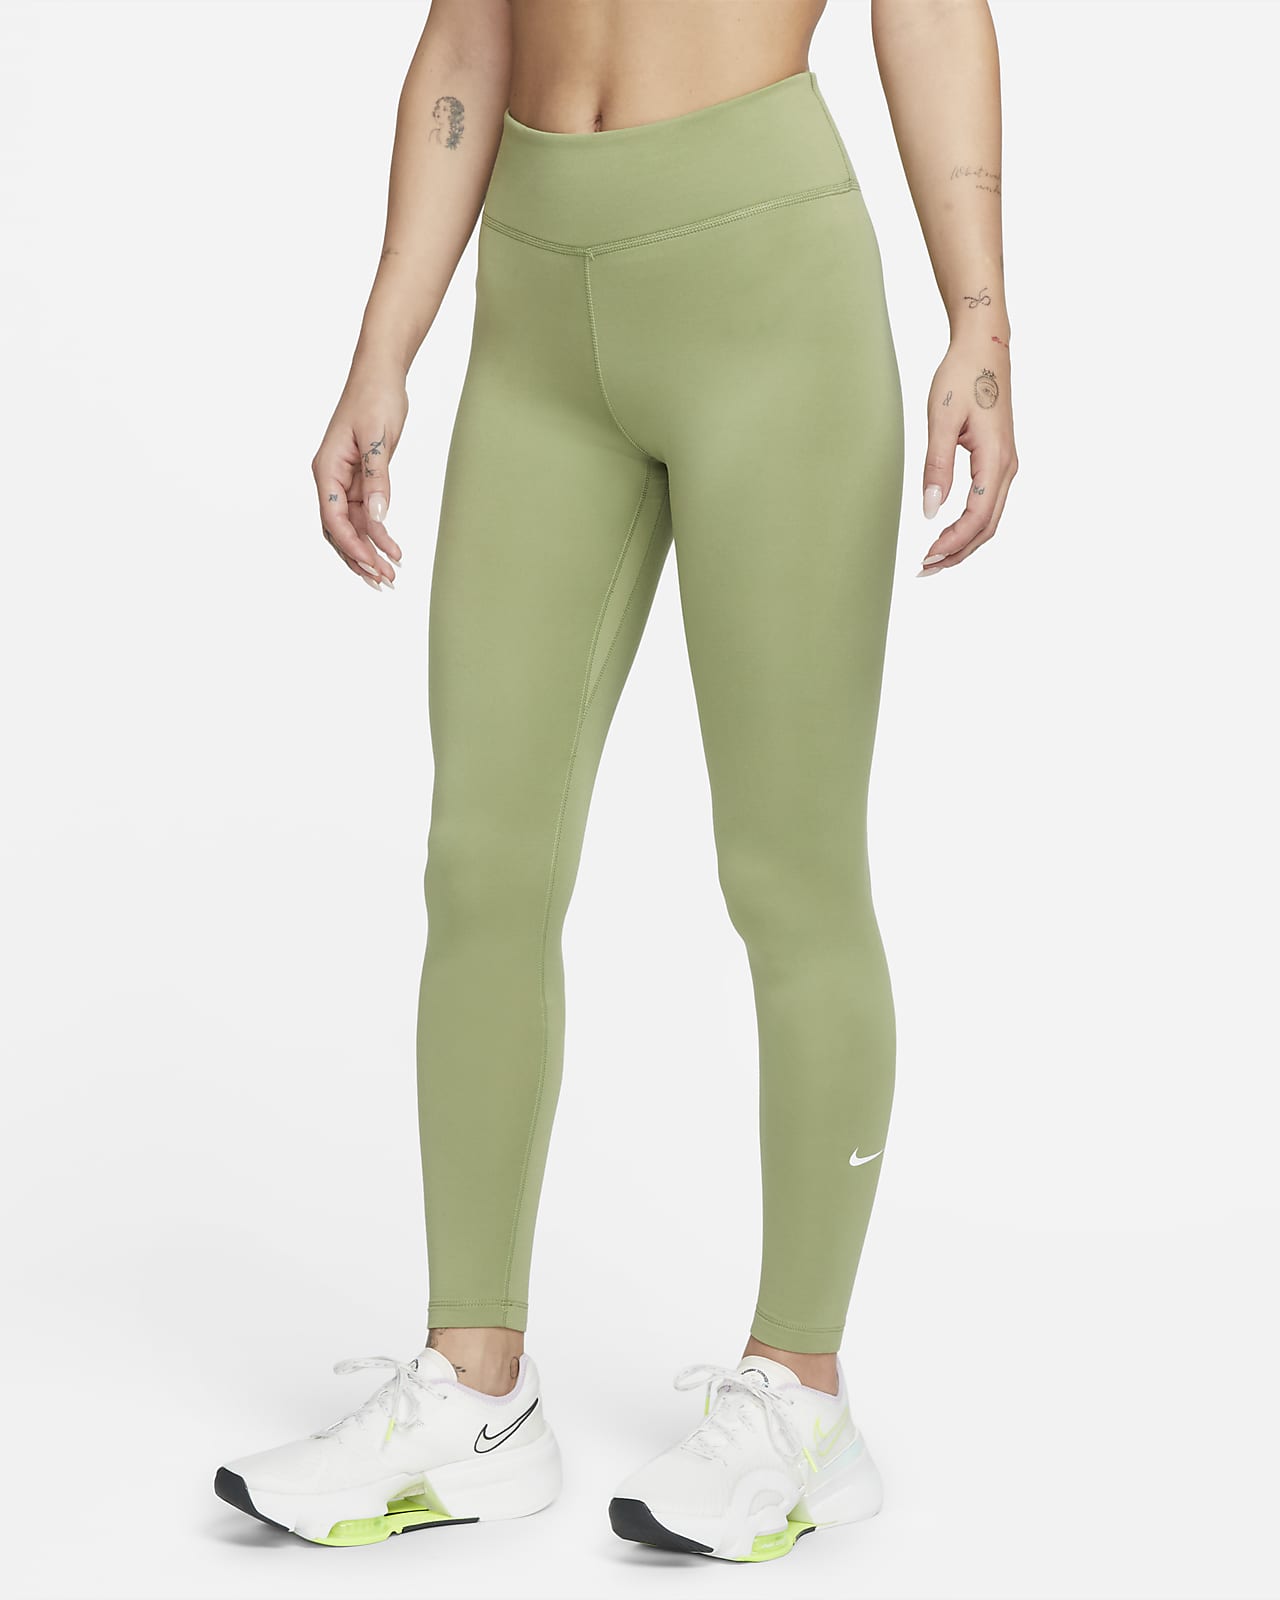 Vooruitgaan toevoegen aan draad Nike Therma-FIT One Women's Mid-Rise Leggings. Nike.com